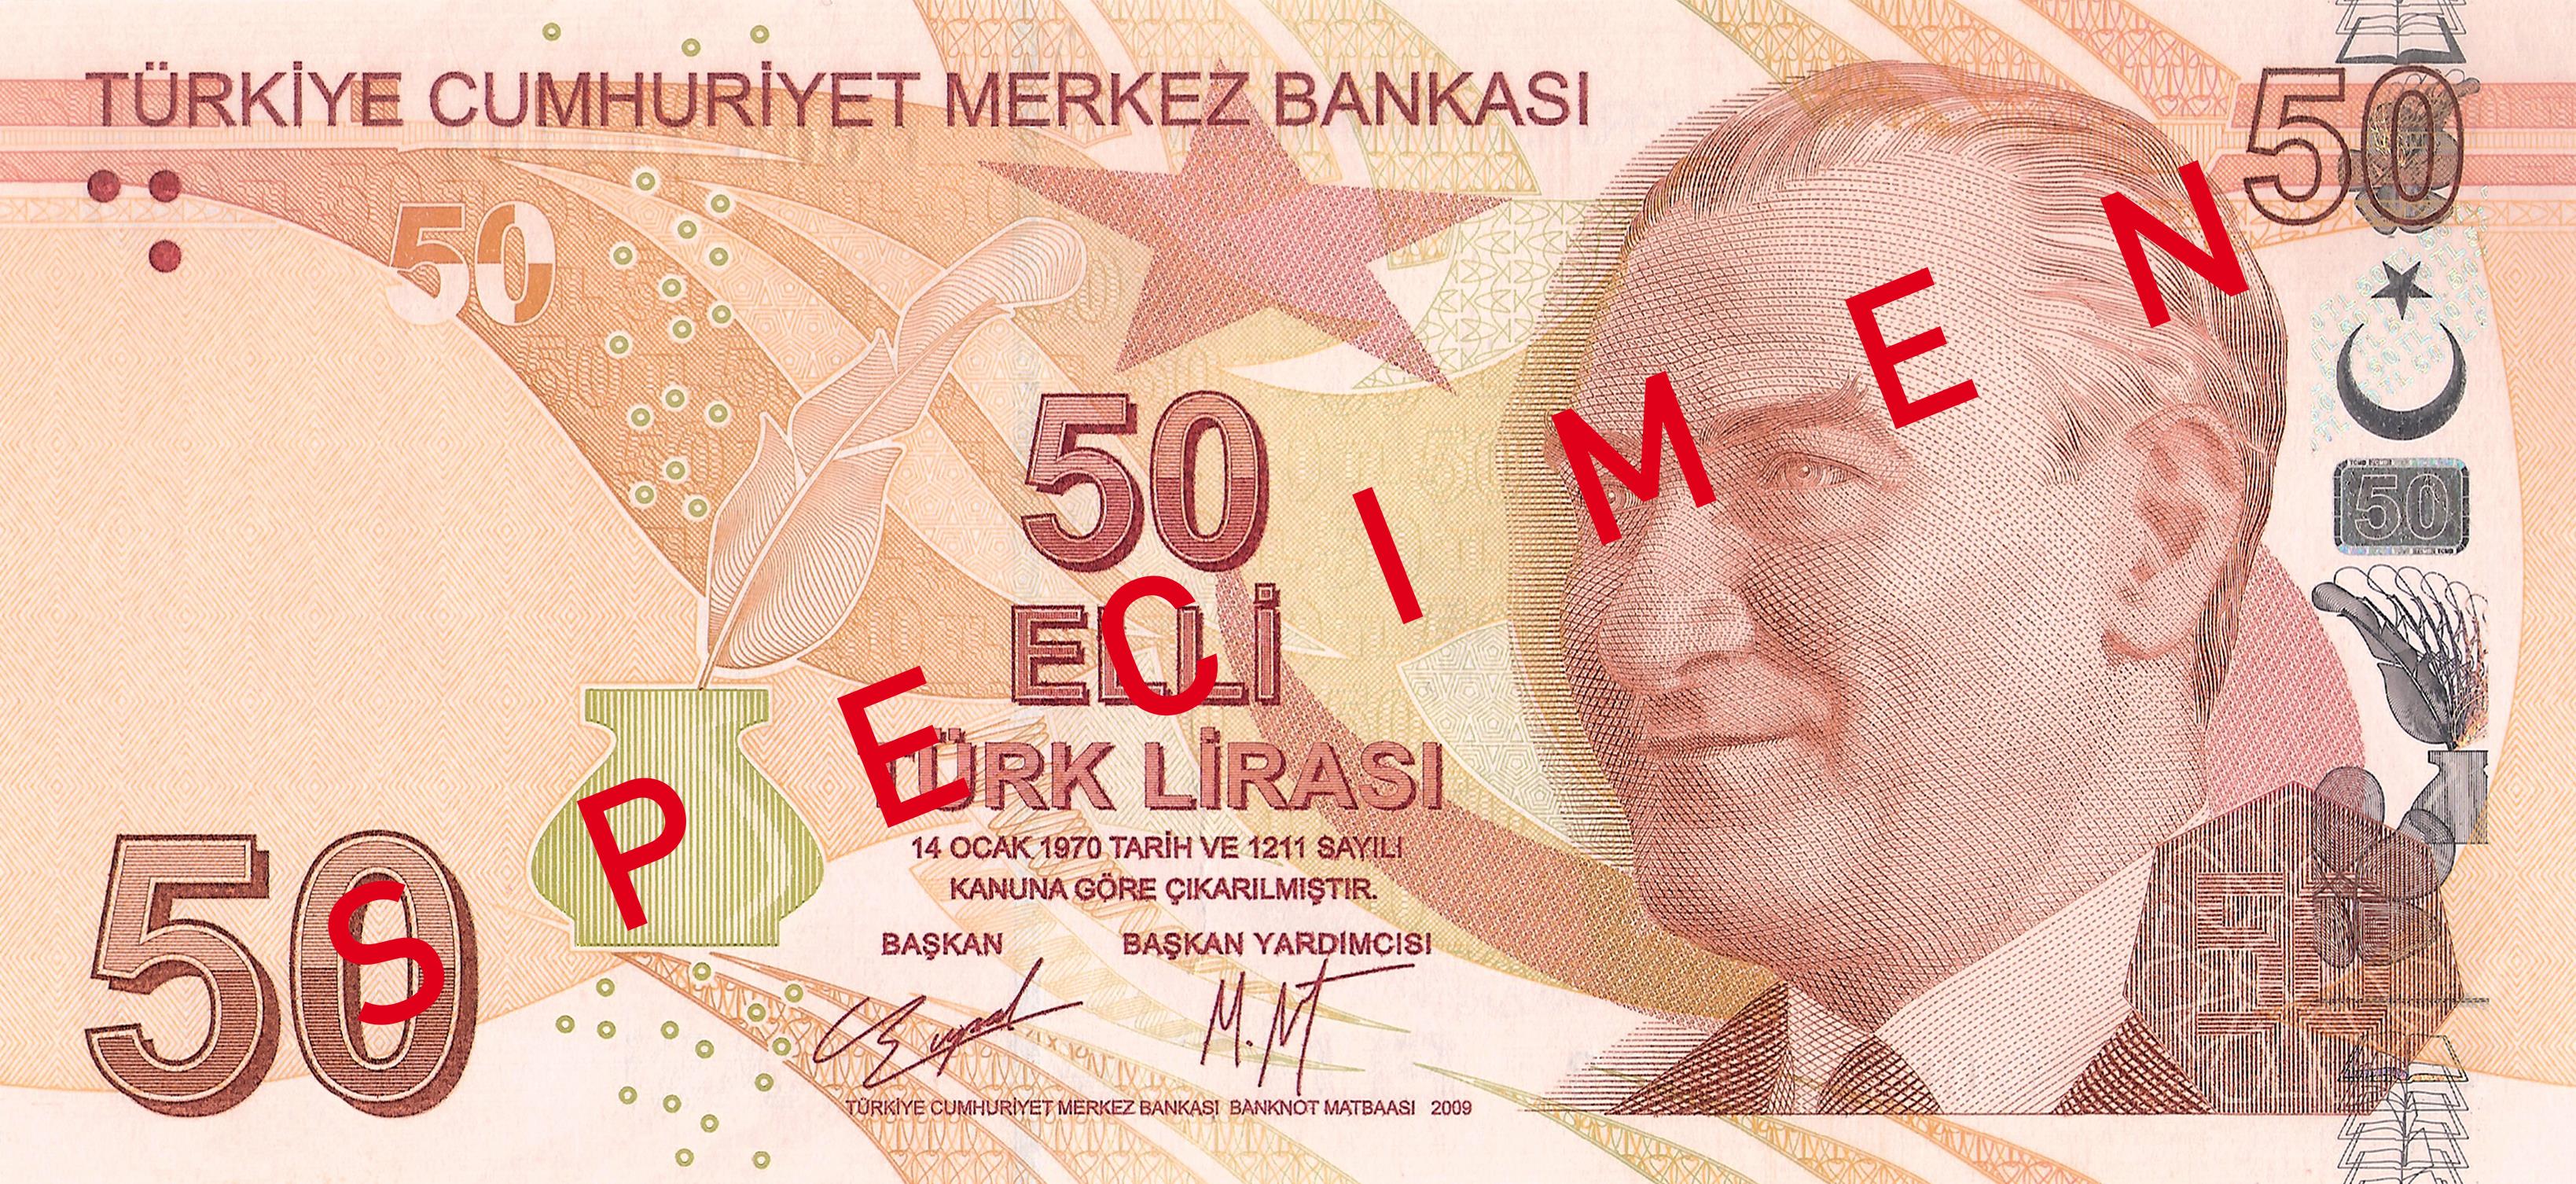 50 Türk Lirası front